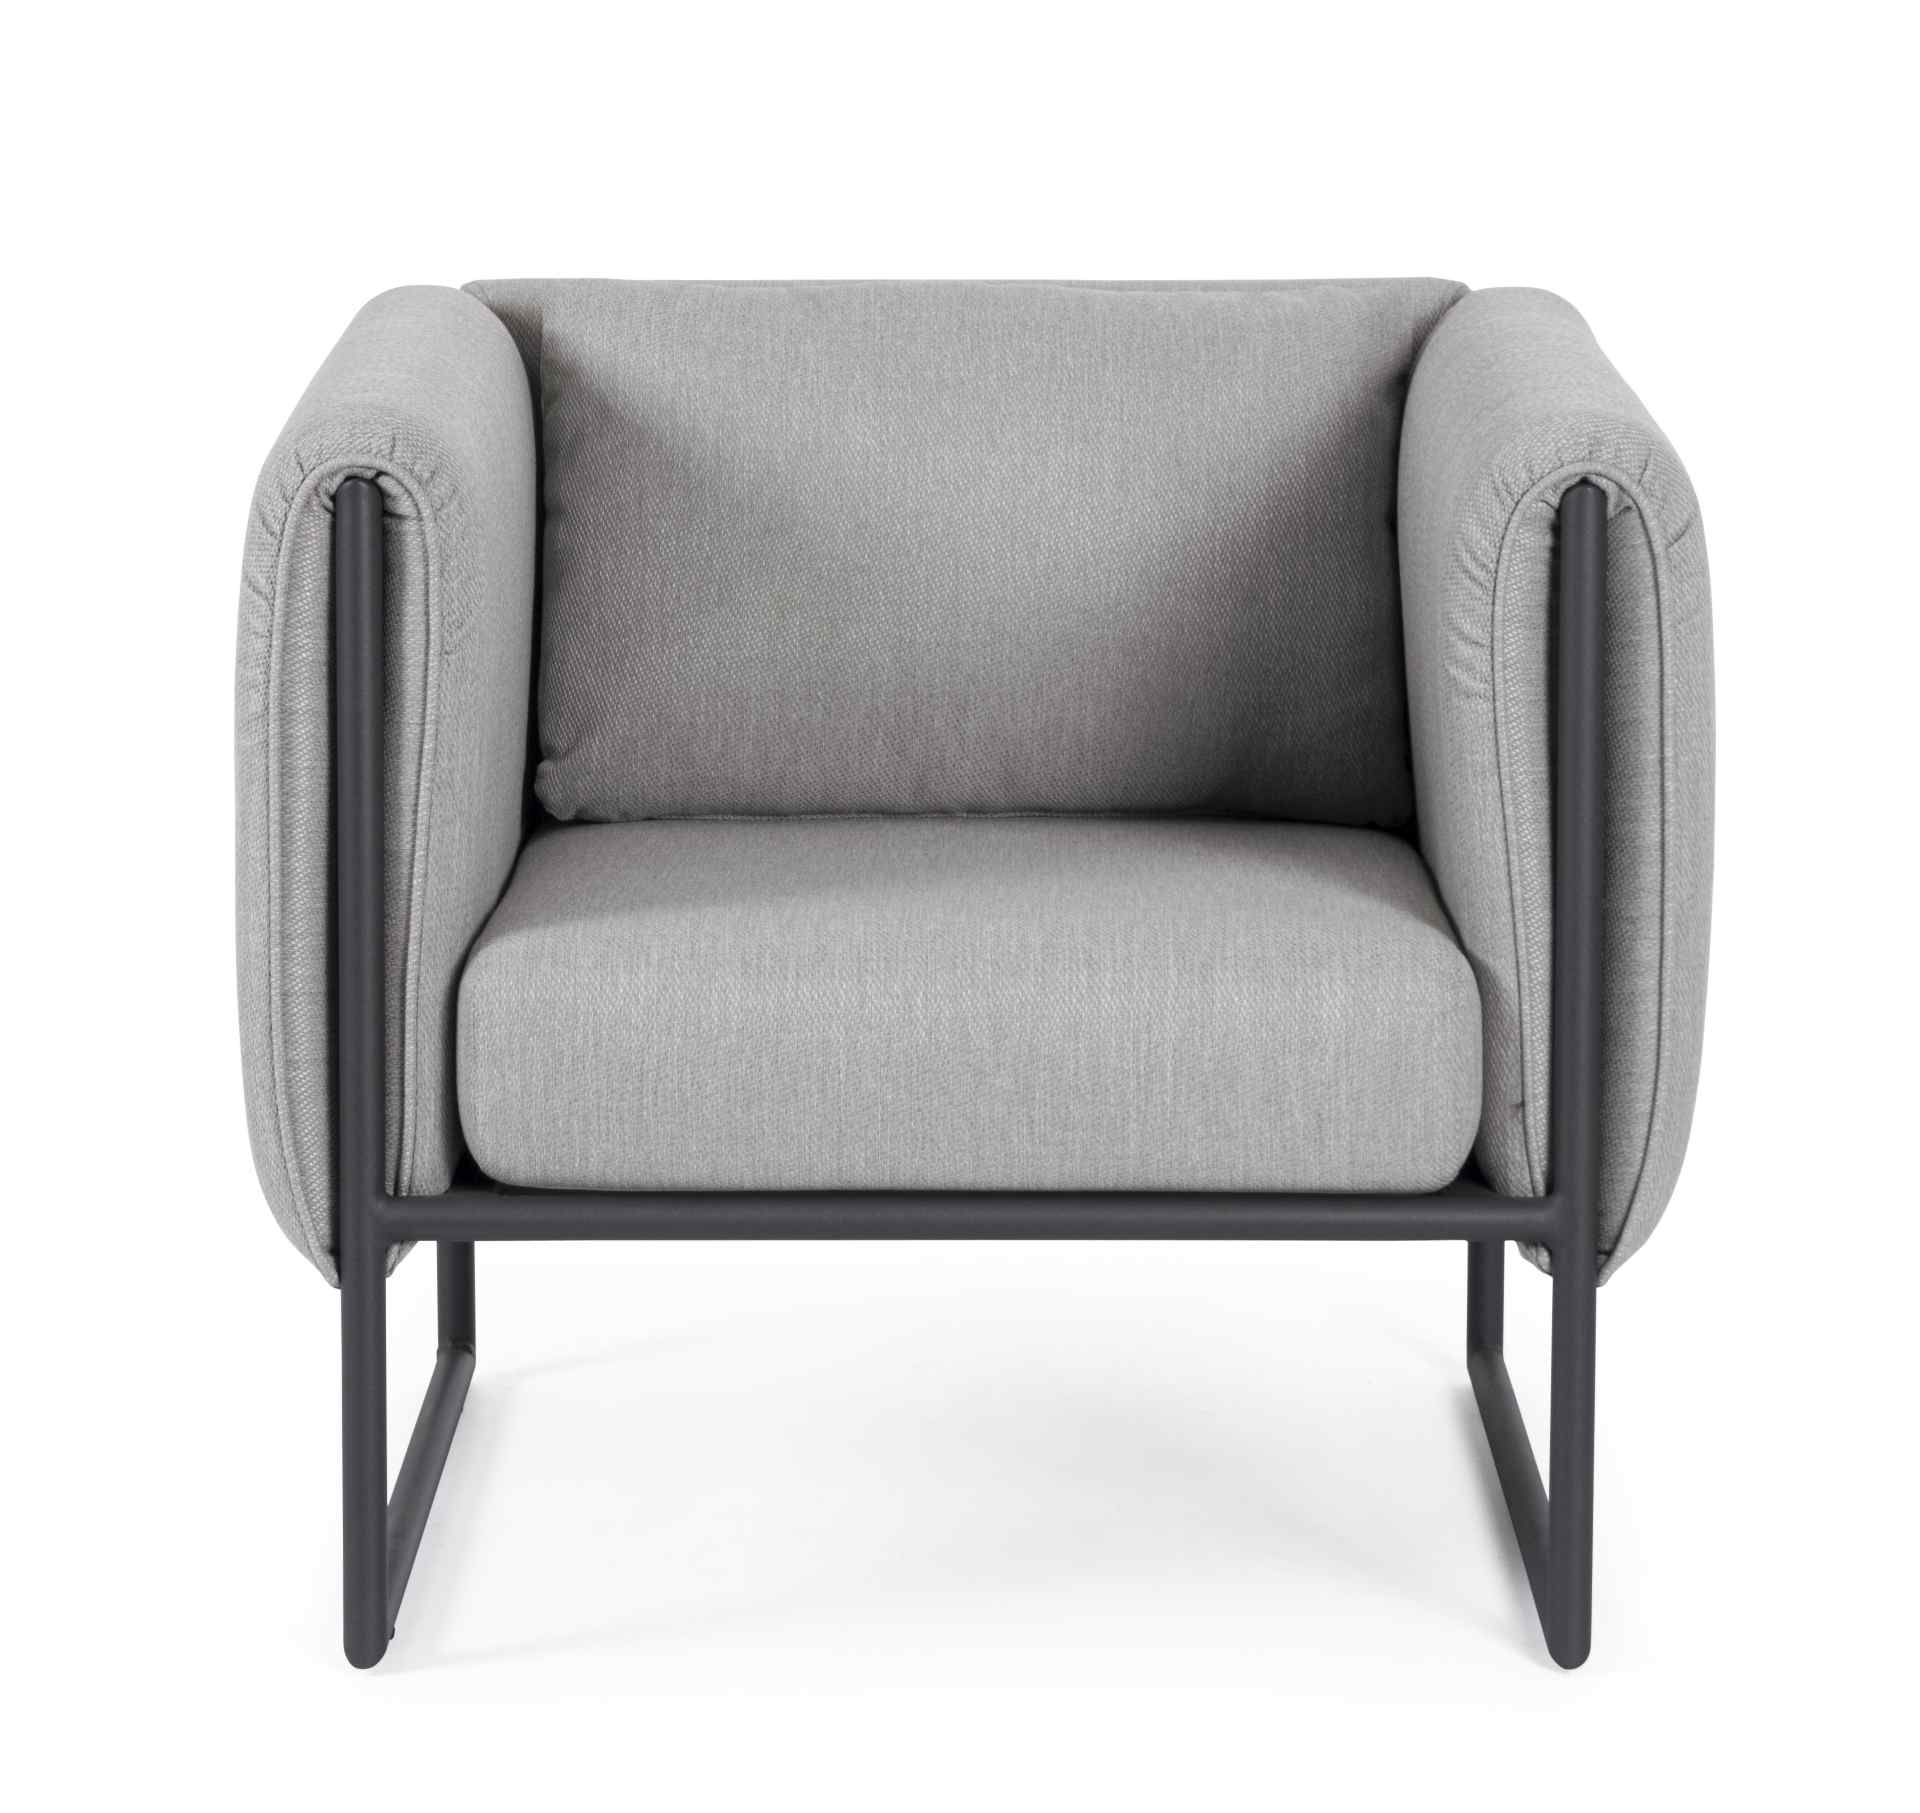 Der Gartensessel Pixel überzeugt mit seinem modernen Design. Gefertigt wurde er aus Olefin-Stoff, welcher einen grauen Farbton besitzt. Das Gestell ist aus Aluminium und hat eine schwarze Farbe. Der Sessel verfügt über eine Sitzhöhe von 42 cm und ist für 